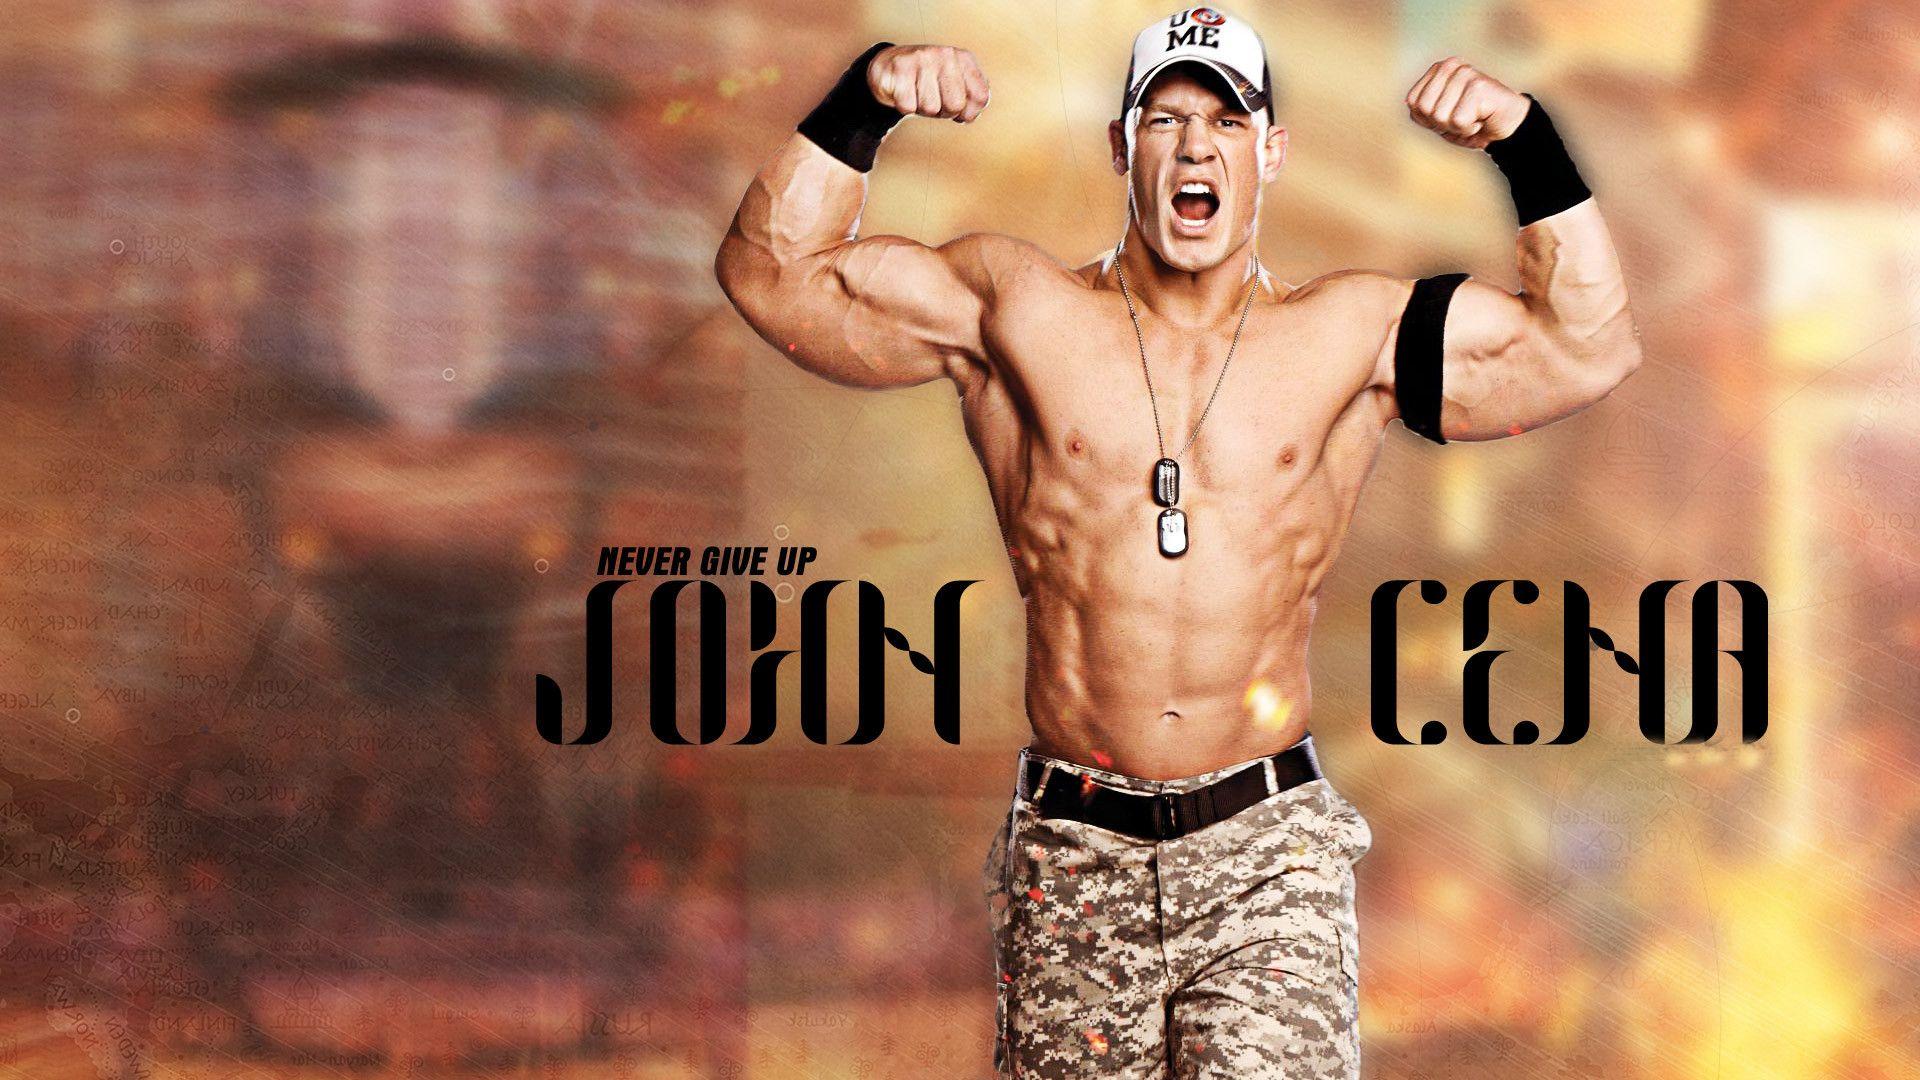 WWE John cena wallpaper for desktop for wrestling lovers and this john 